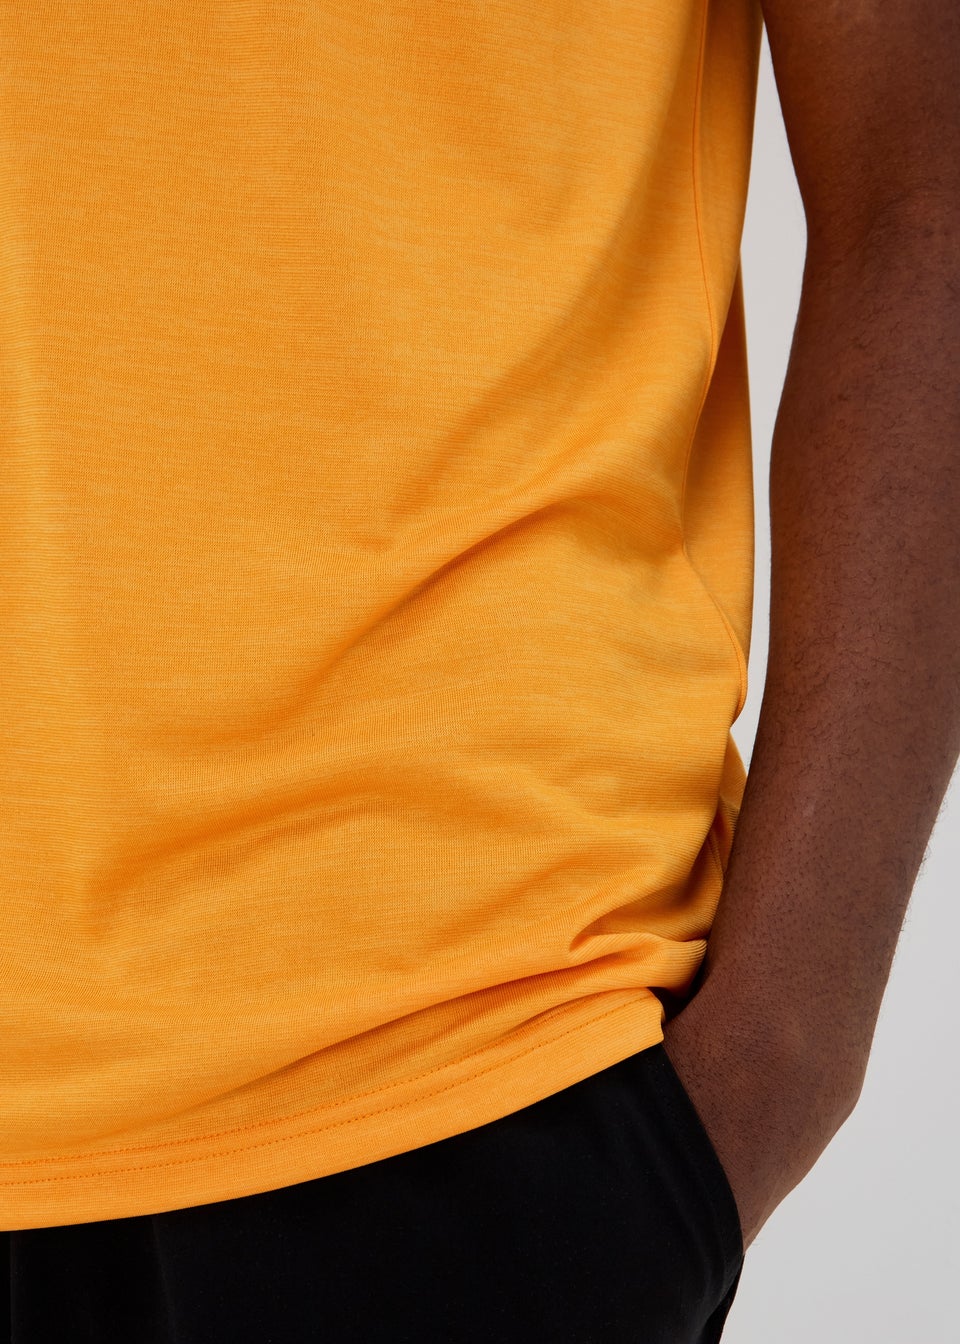 Souluxe Orange Dual Tone T-Shirt